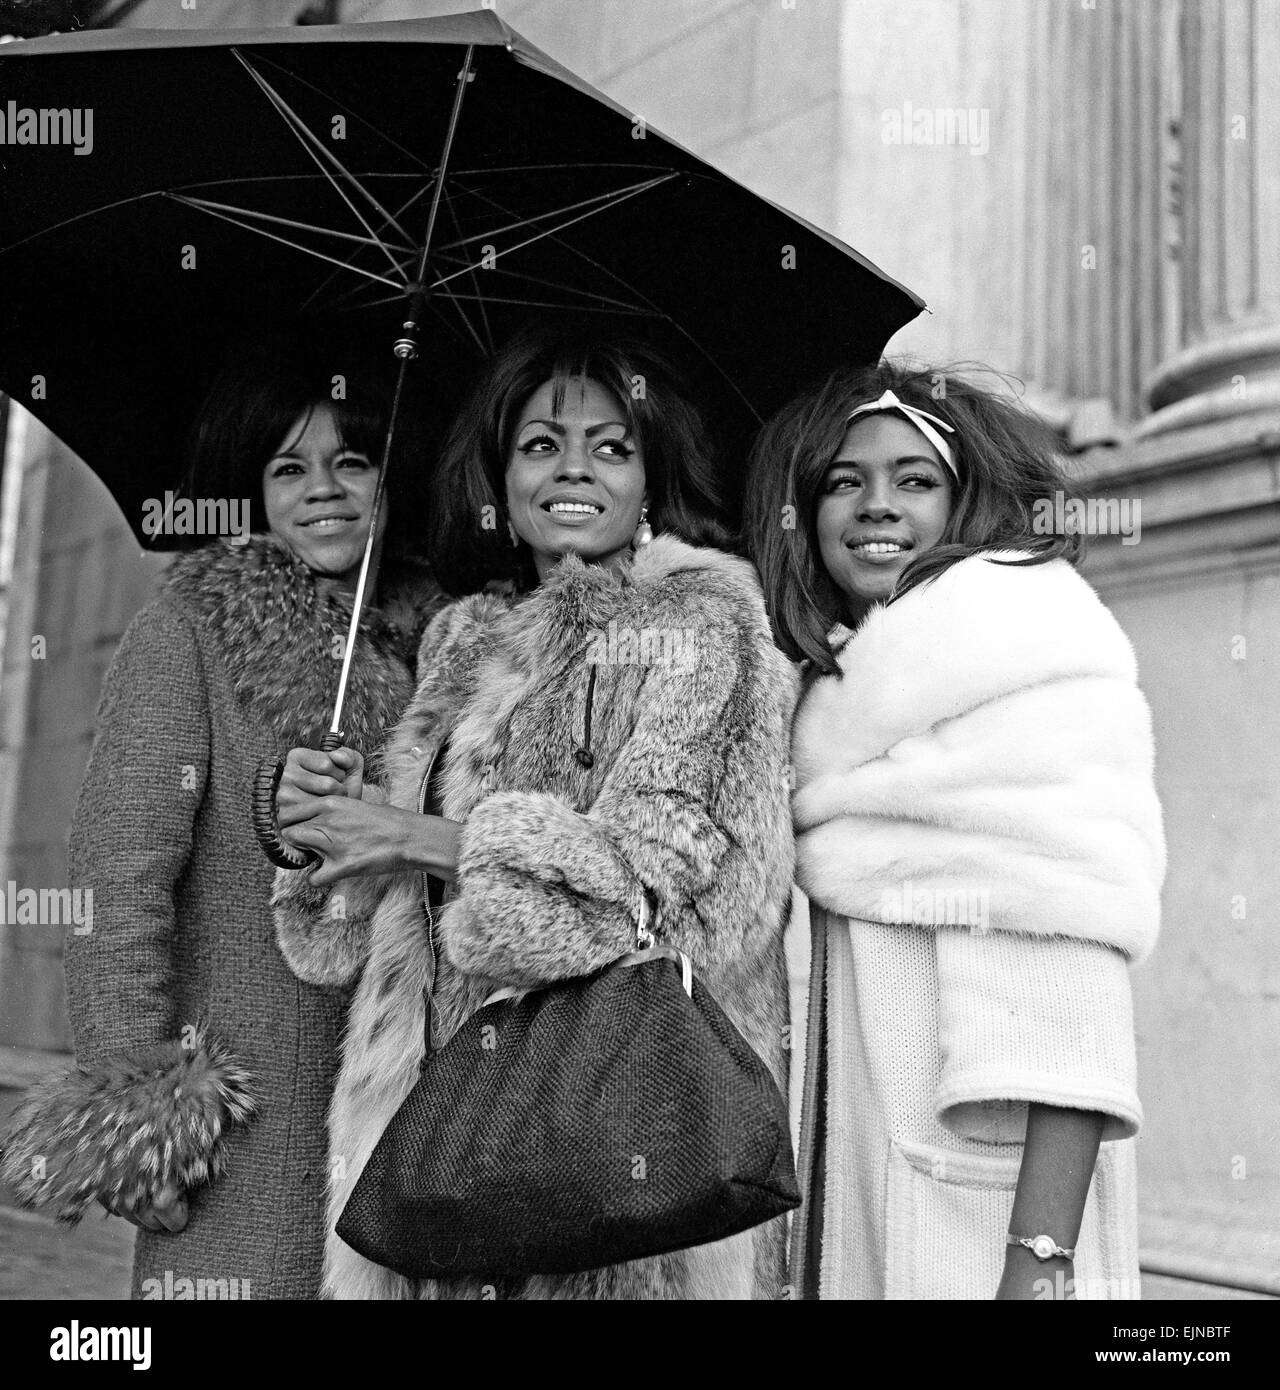 "Tamla Motown gruppi invadere Londra' il Supremes condividere un umrella a Marble Arch, in visita a Londra con la Tamla Motown gruppi. Foto Stock